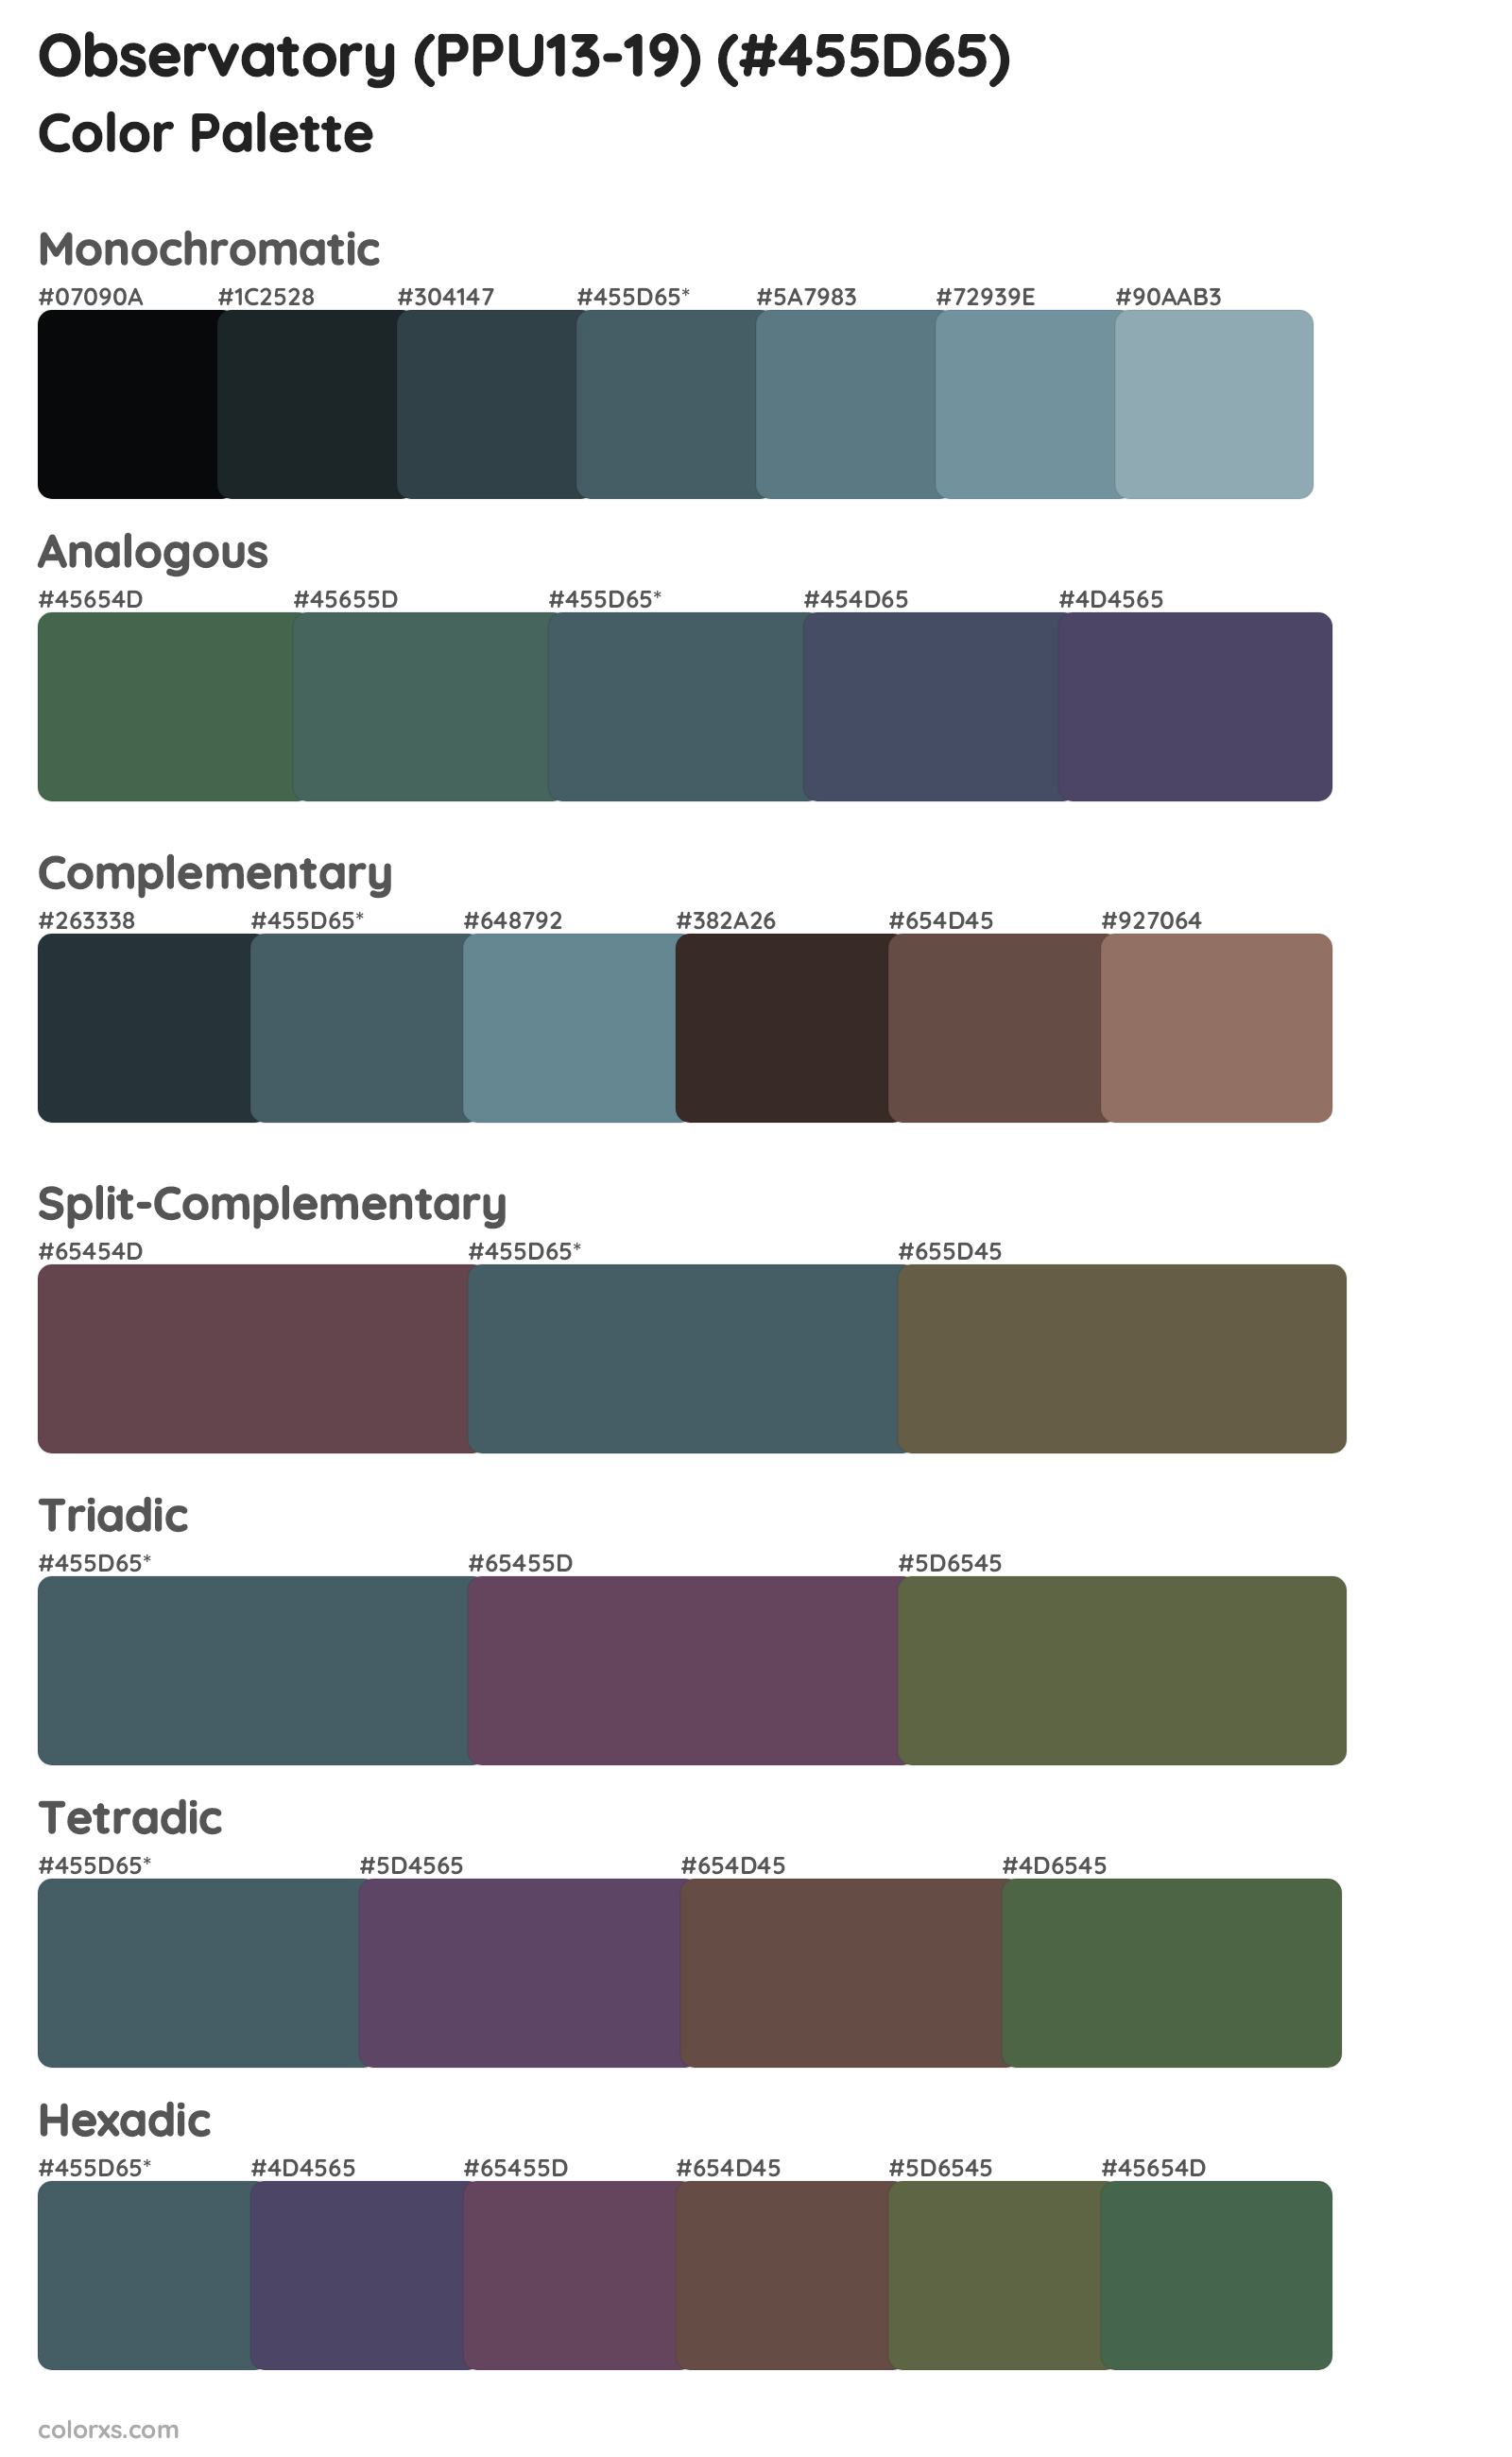 Observatory (PPU13-19) Color Scheme Palettes